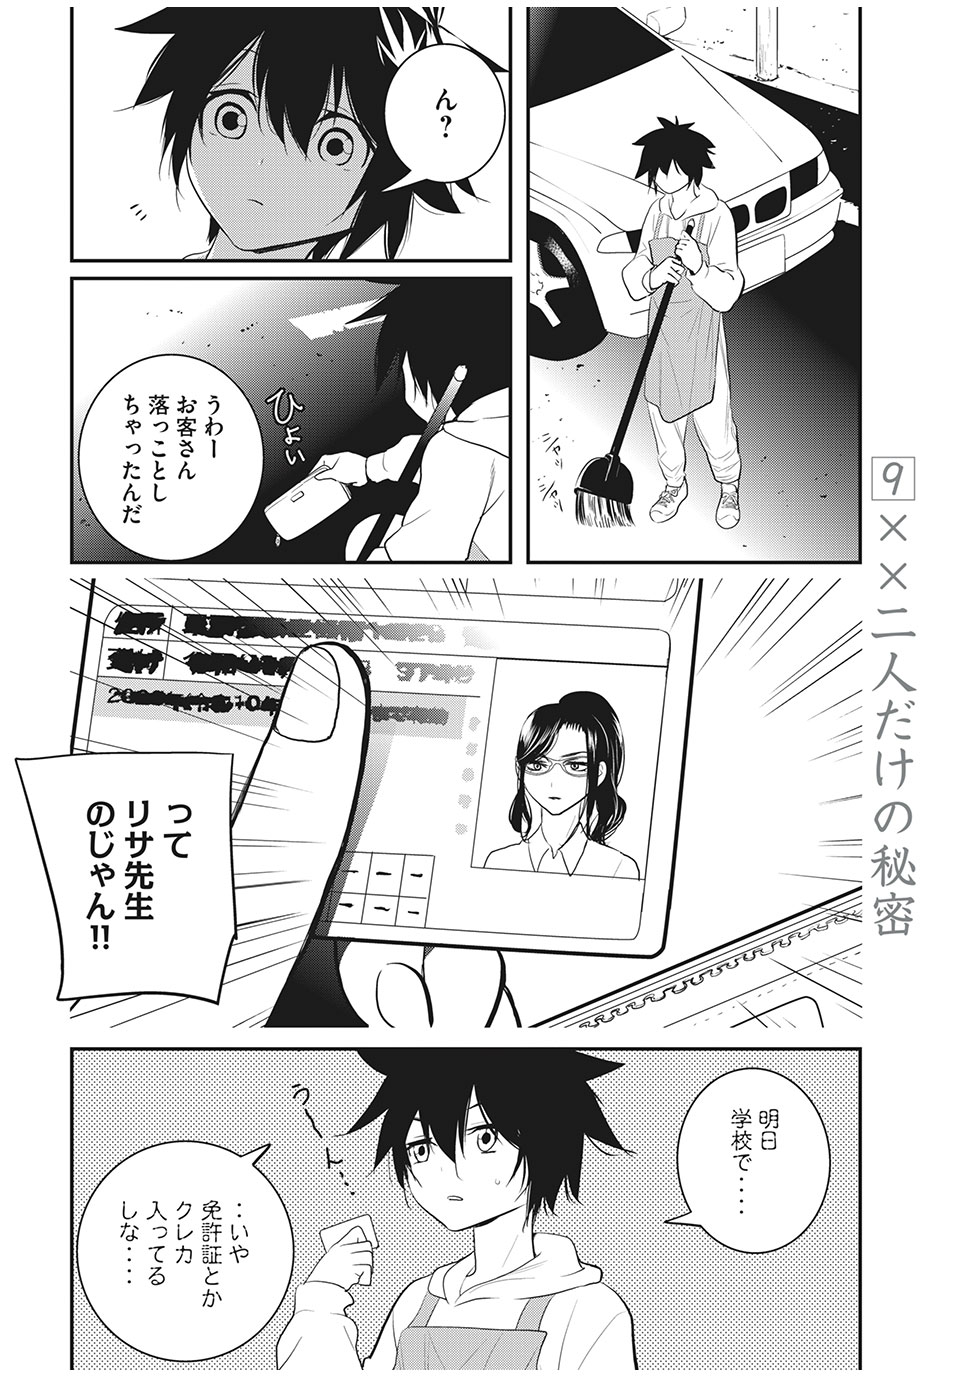 Eigo ×× Sensei - Chapter 9 - Page 2